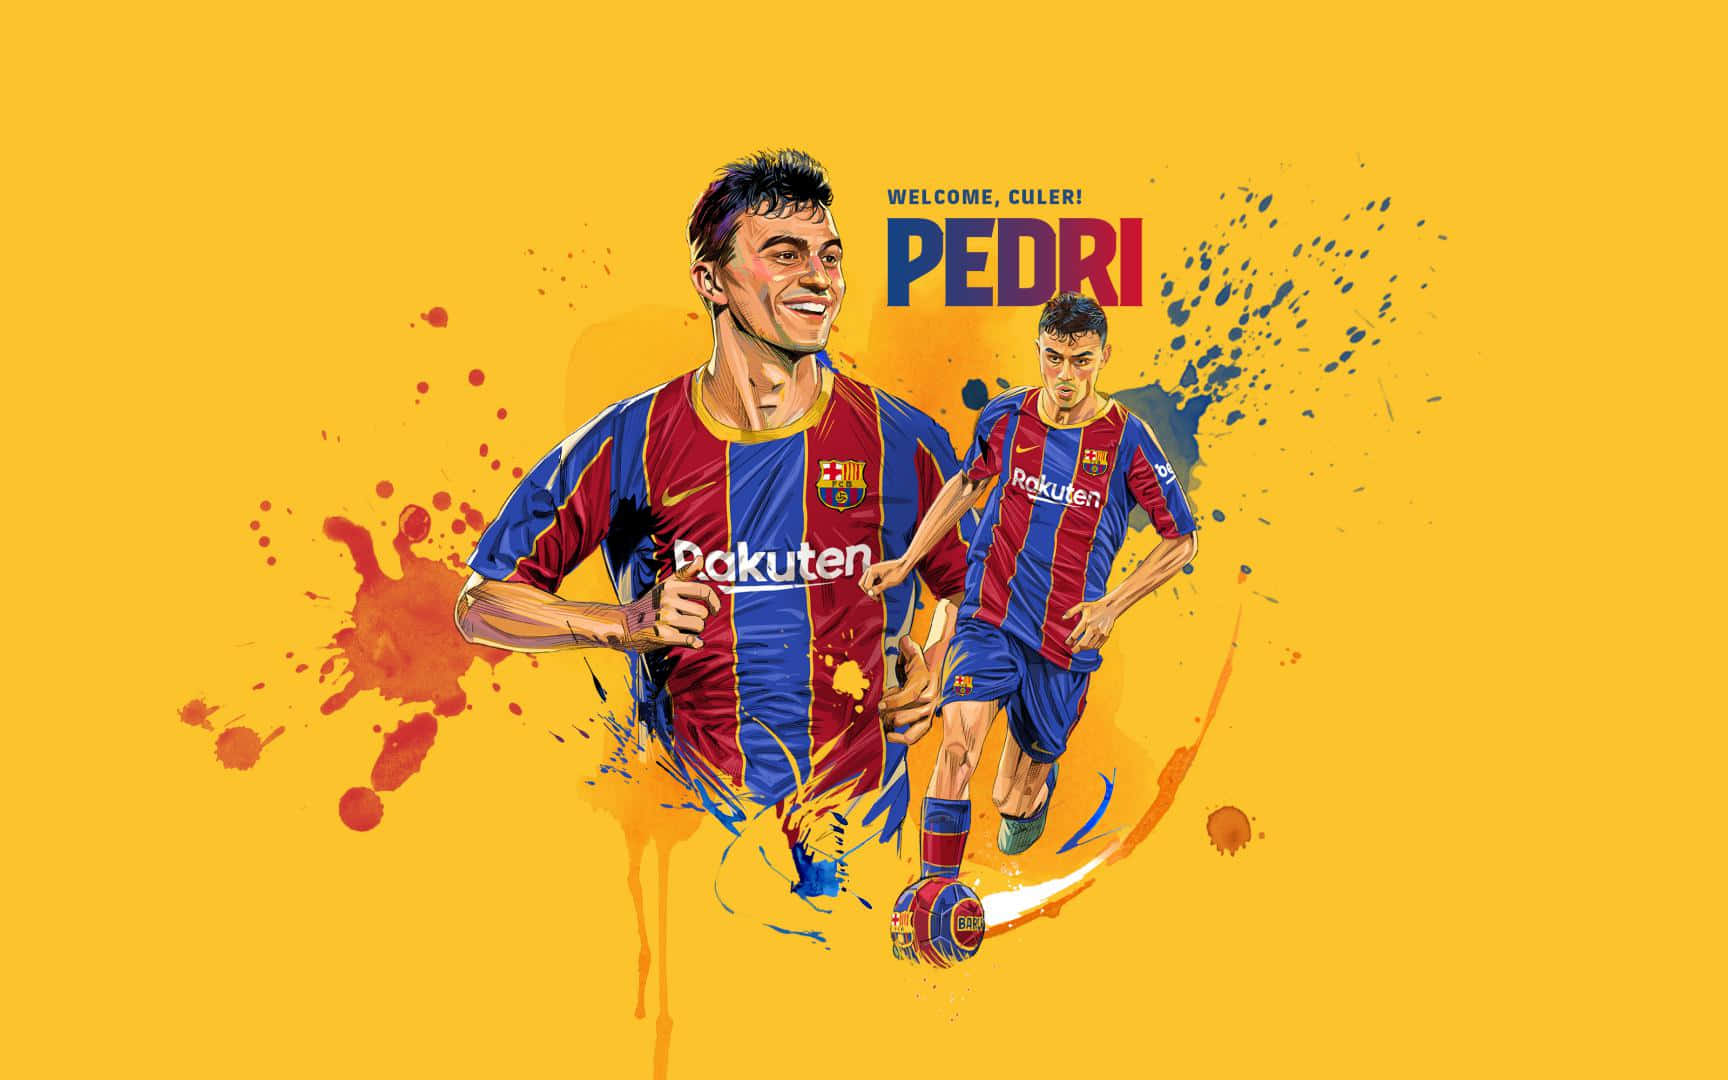 Pedri Barcelona Welcome Artwork Wallpaper